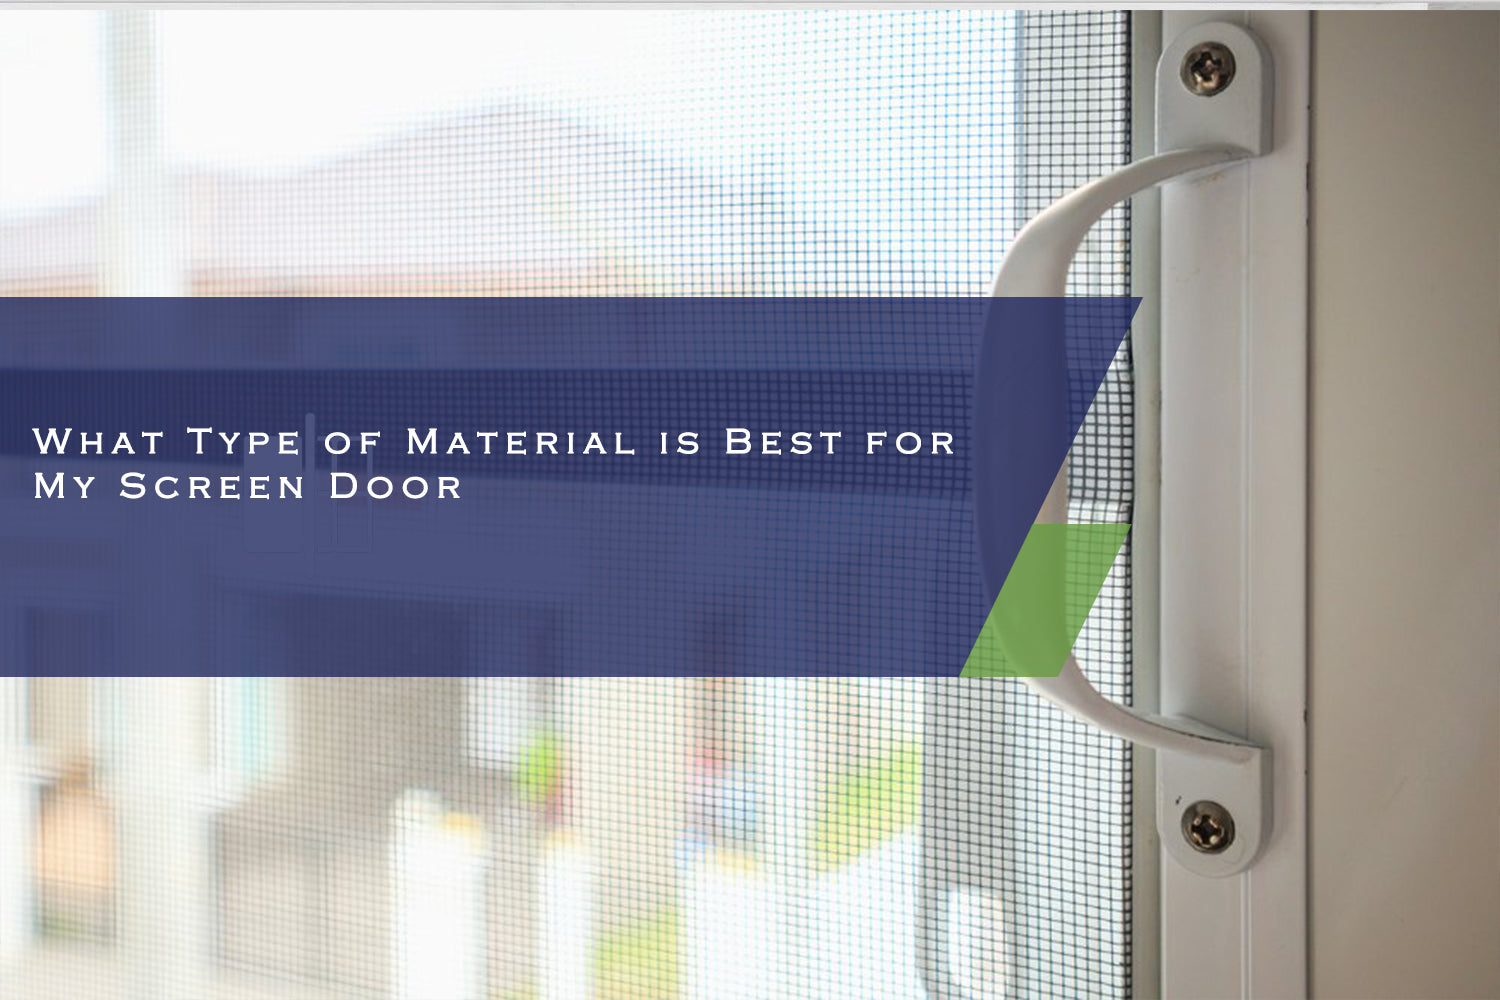 What Type of Material is Best for My Screen Door?